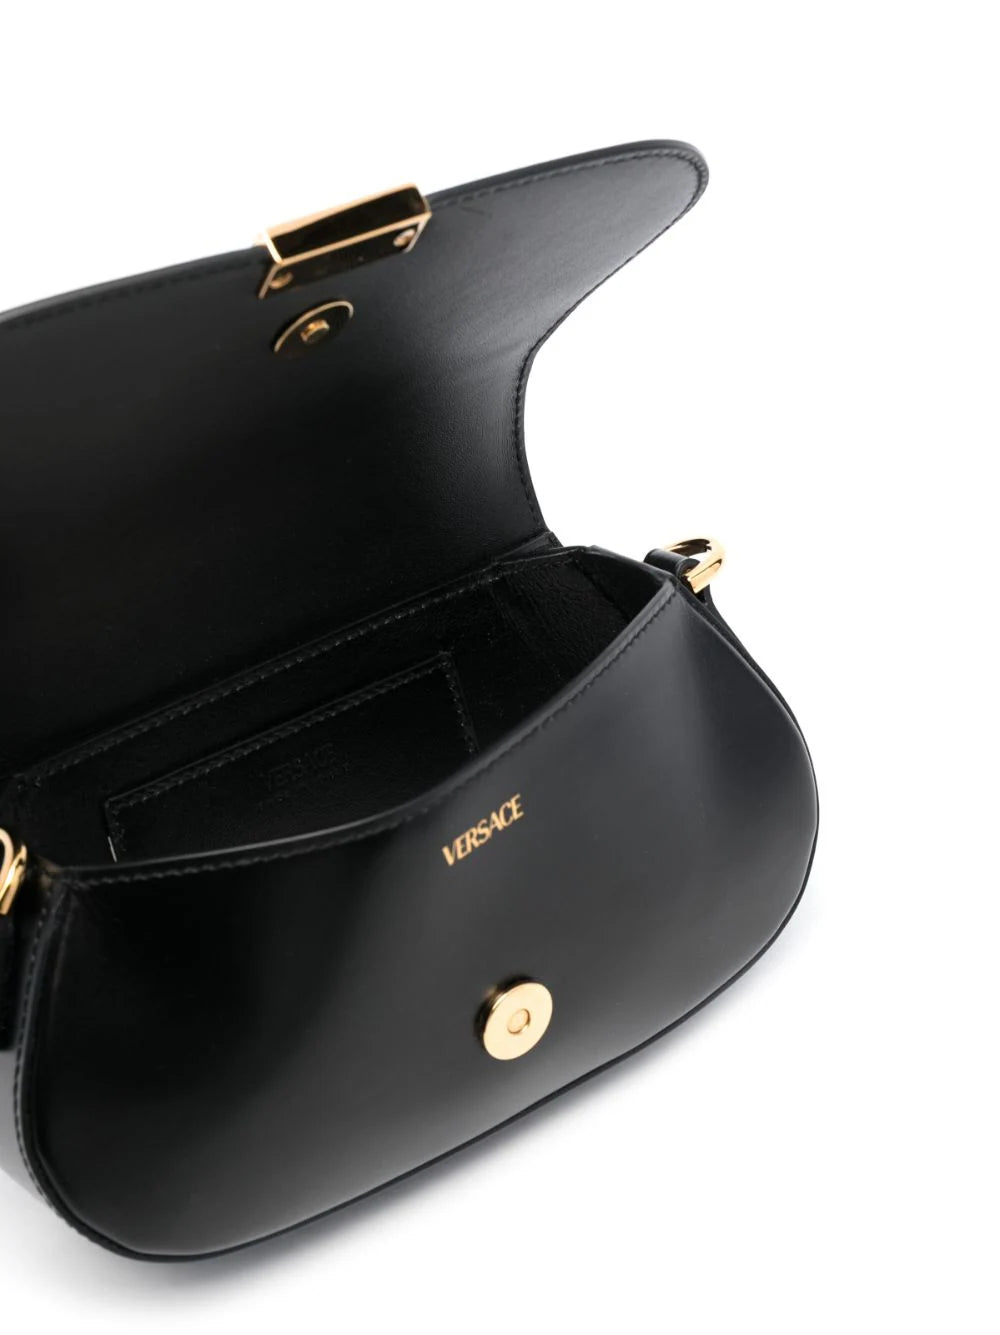 Versace Black with Gold Greca Goddess Mini Shoulder Bag